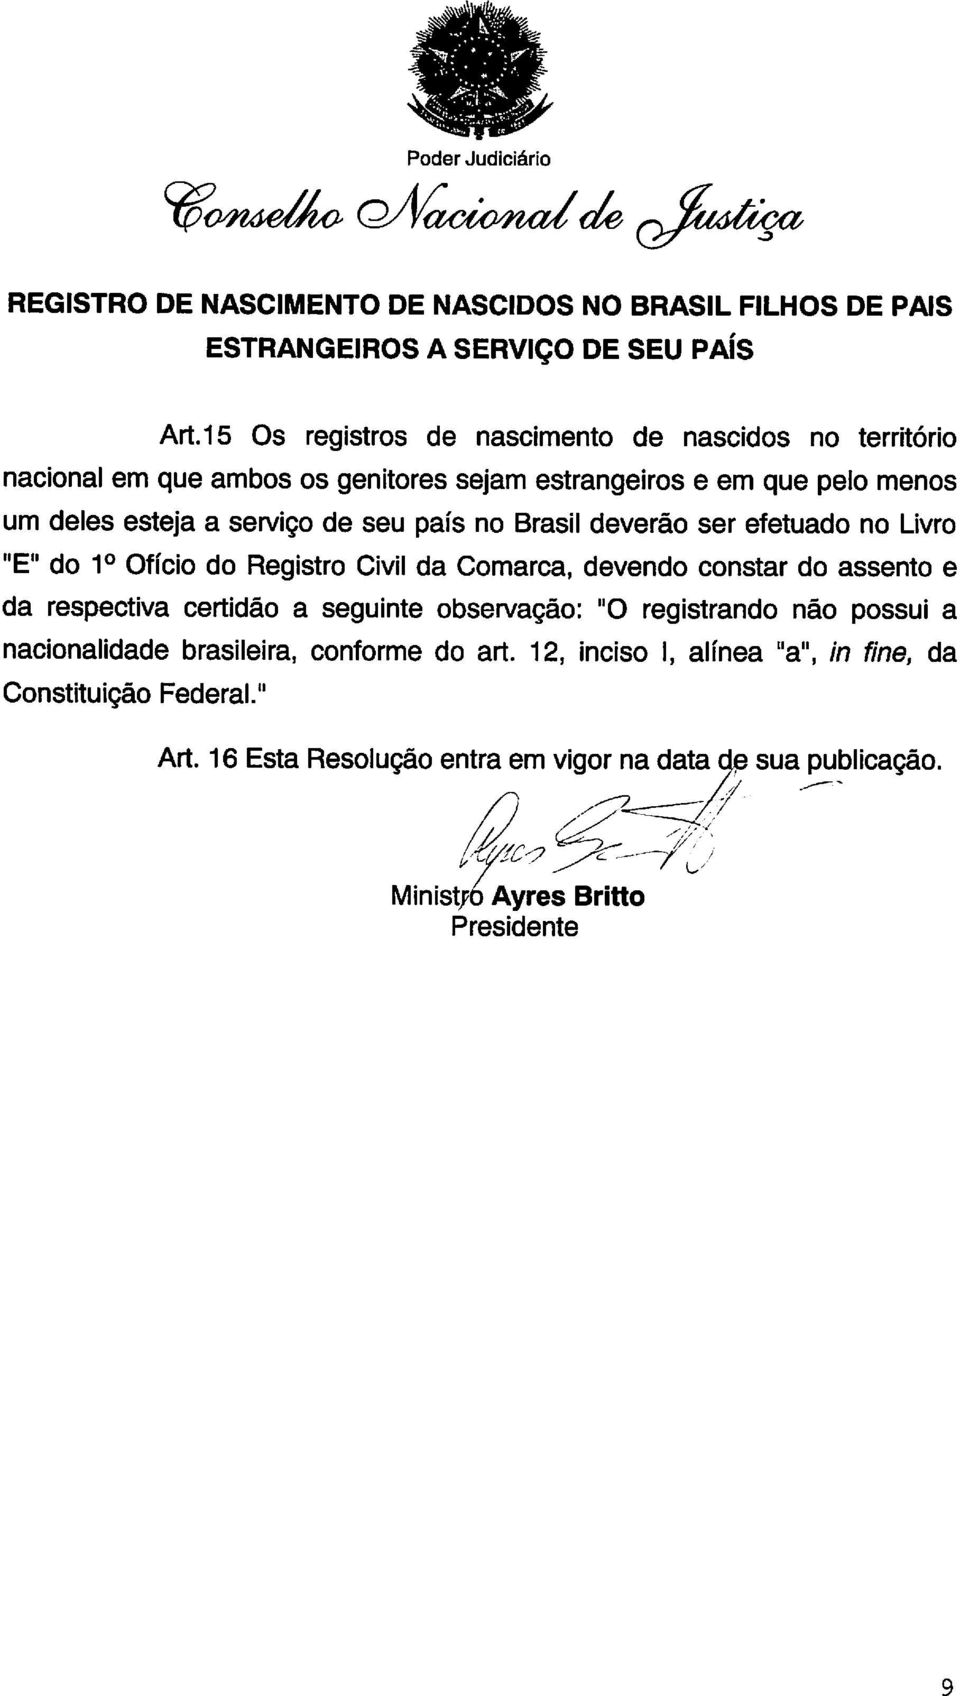 Brasil deverão ser efetuado no Livro "E" do 1o Ofício do Registro Civil da Comarca, devendo constar do assento e da respectiva certidão a seguinte observação: "O